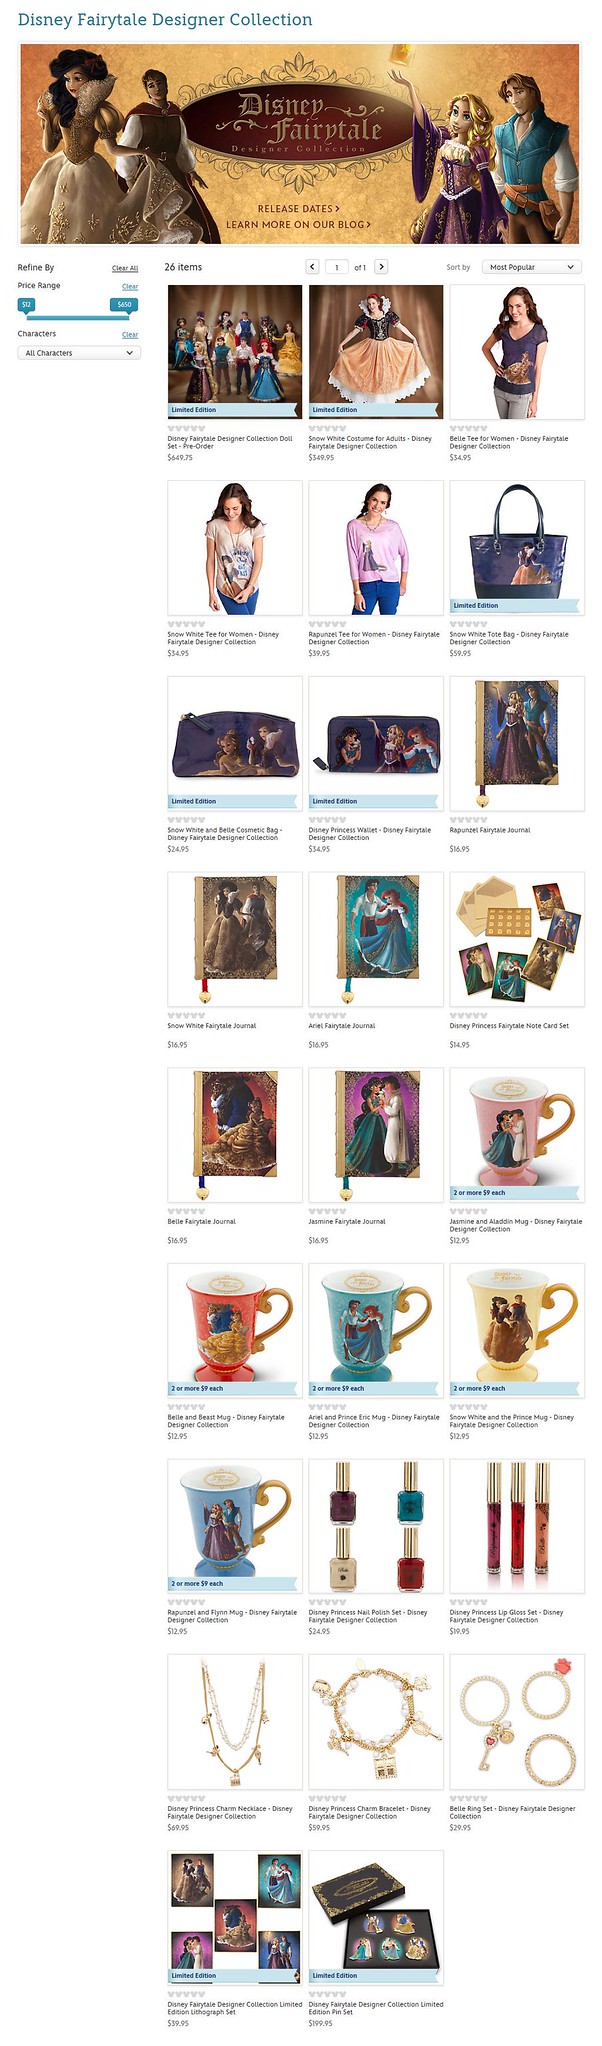 Disney Fairytale Designer Collection (depuis 2013) - Page 31 9490816987_38d7415f8a_k